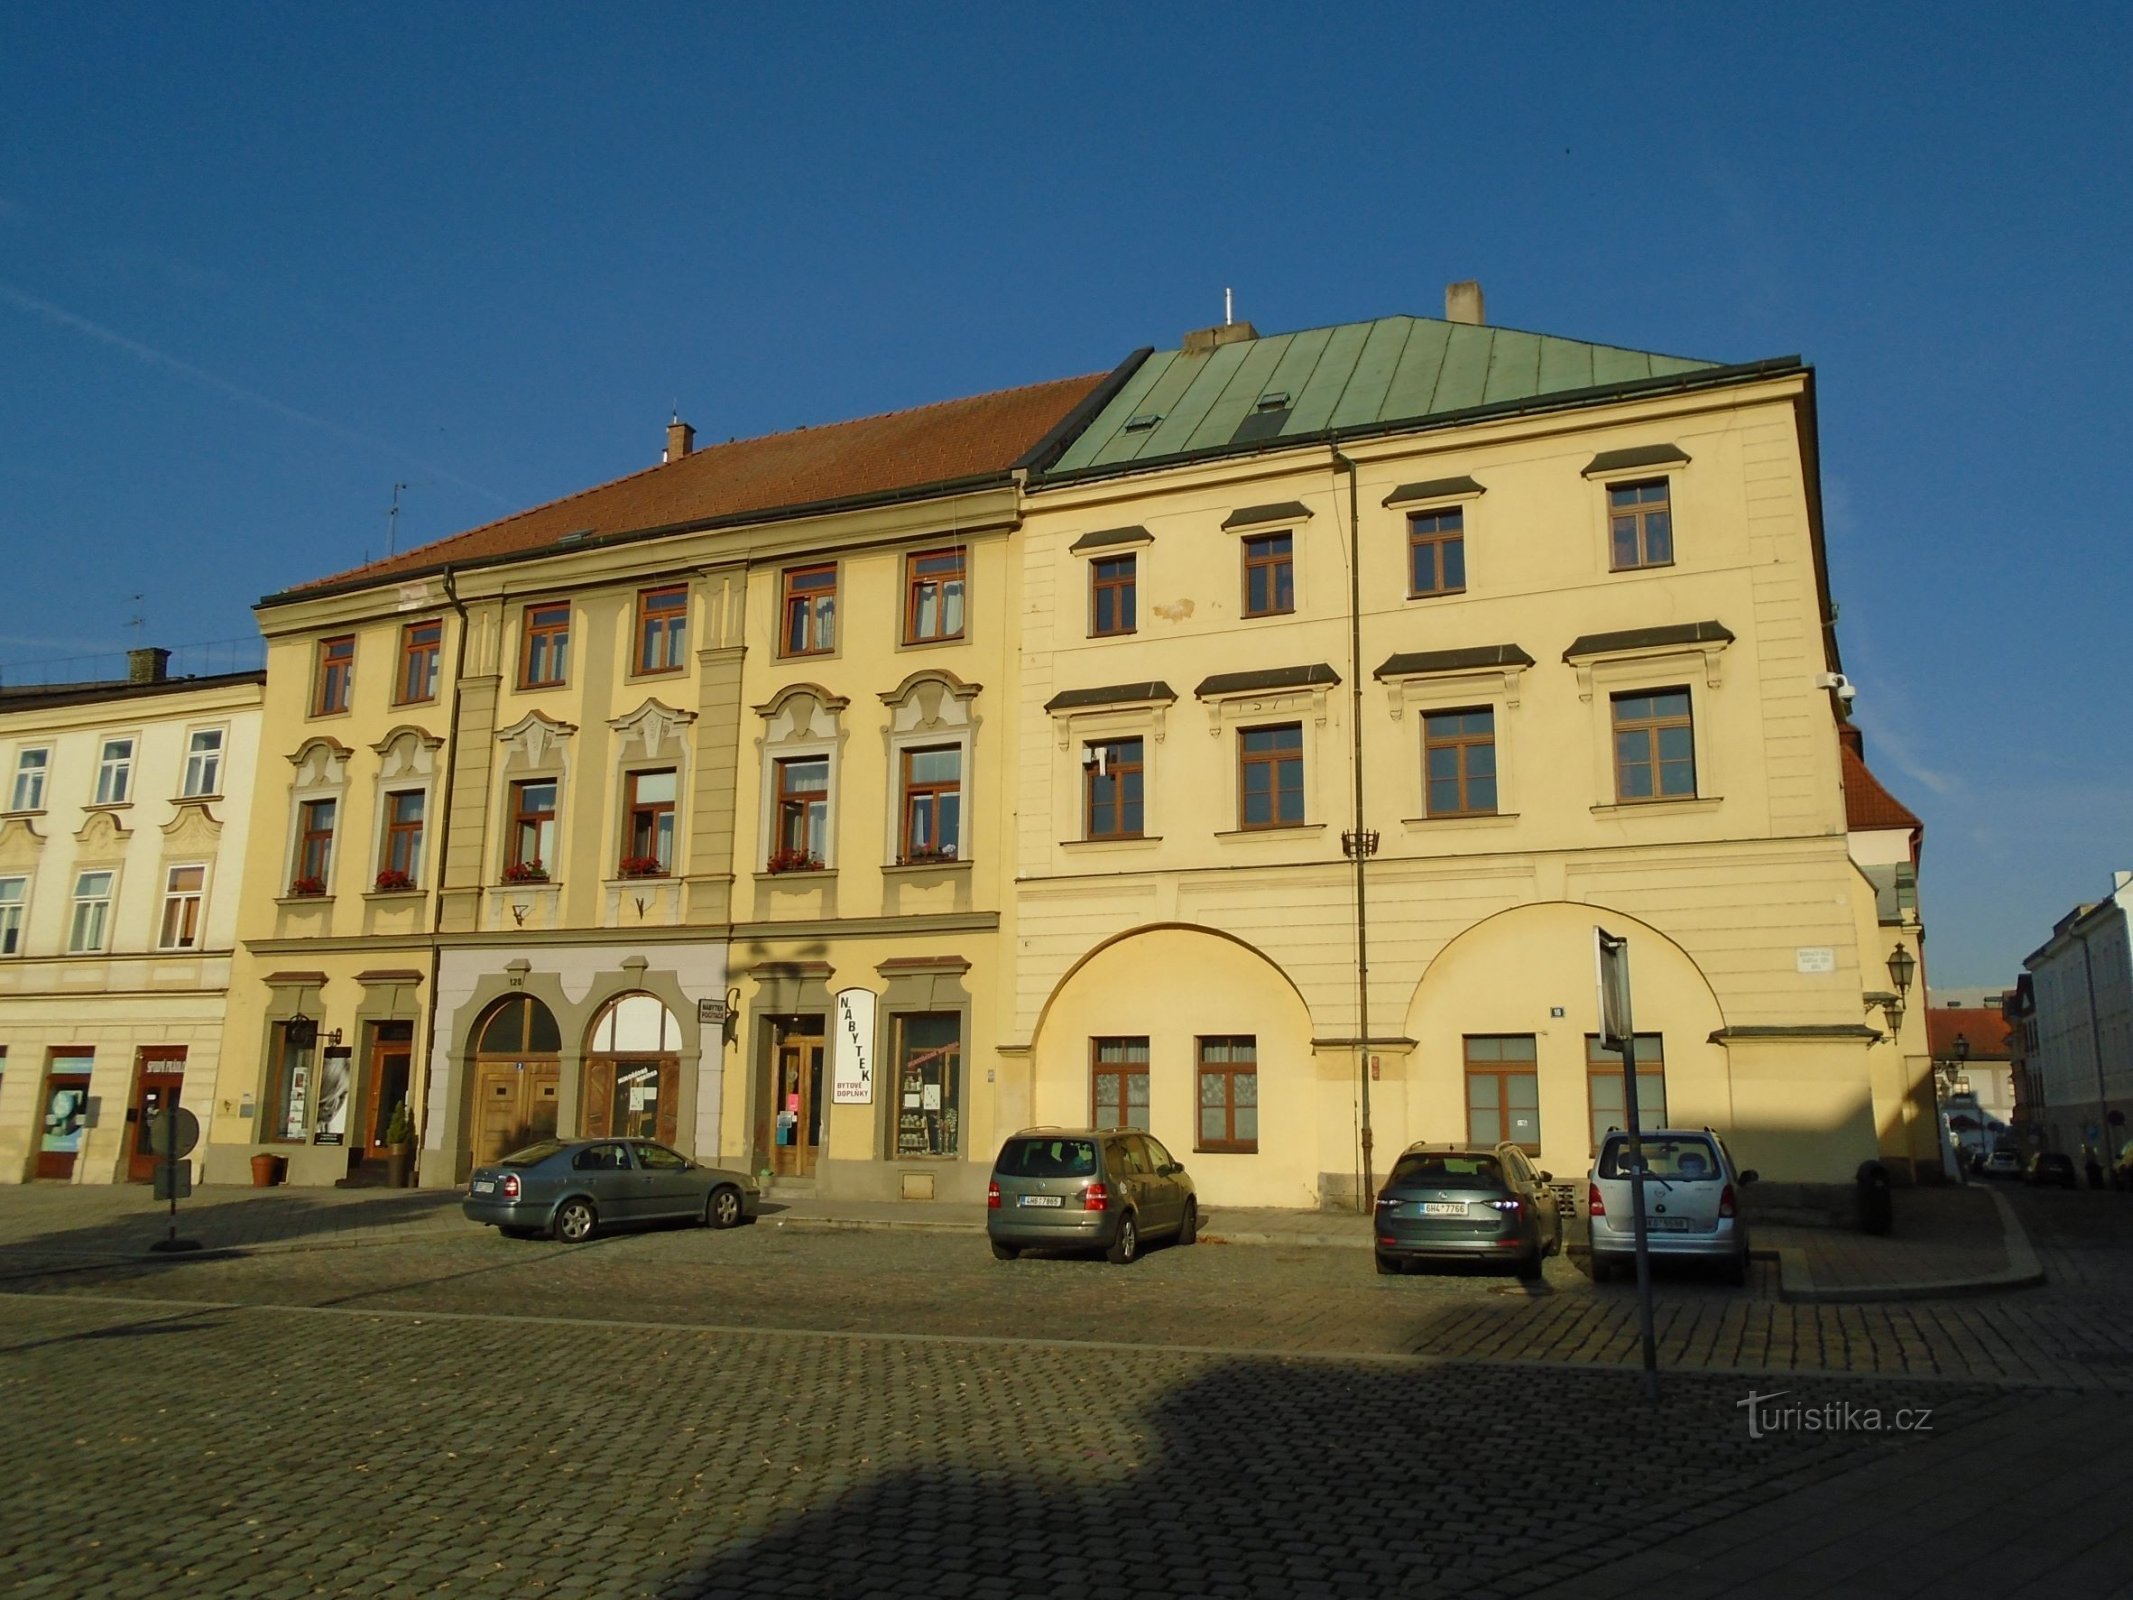 Malé náměstí nr. 128 og Dlouhá nr. 127 (Hradec Králové, 5.7.2018. juli XNUMX)